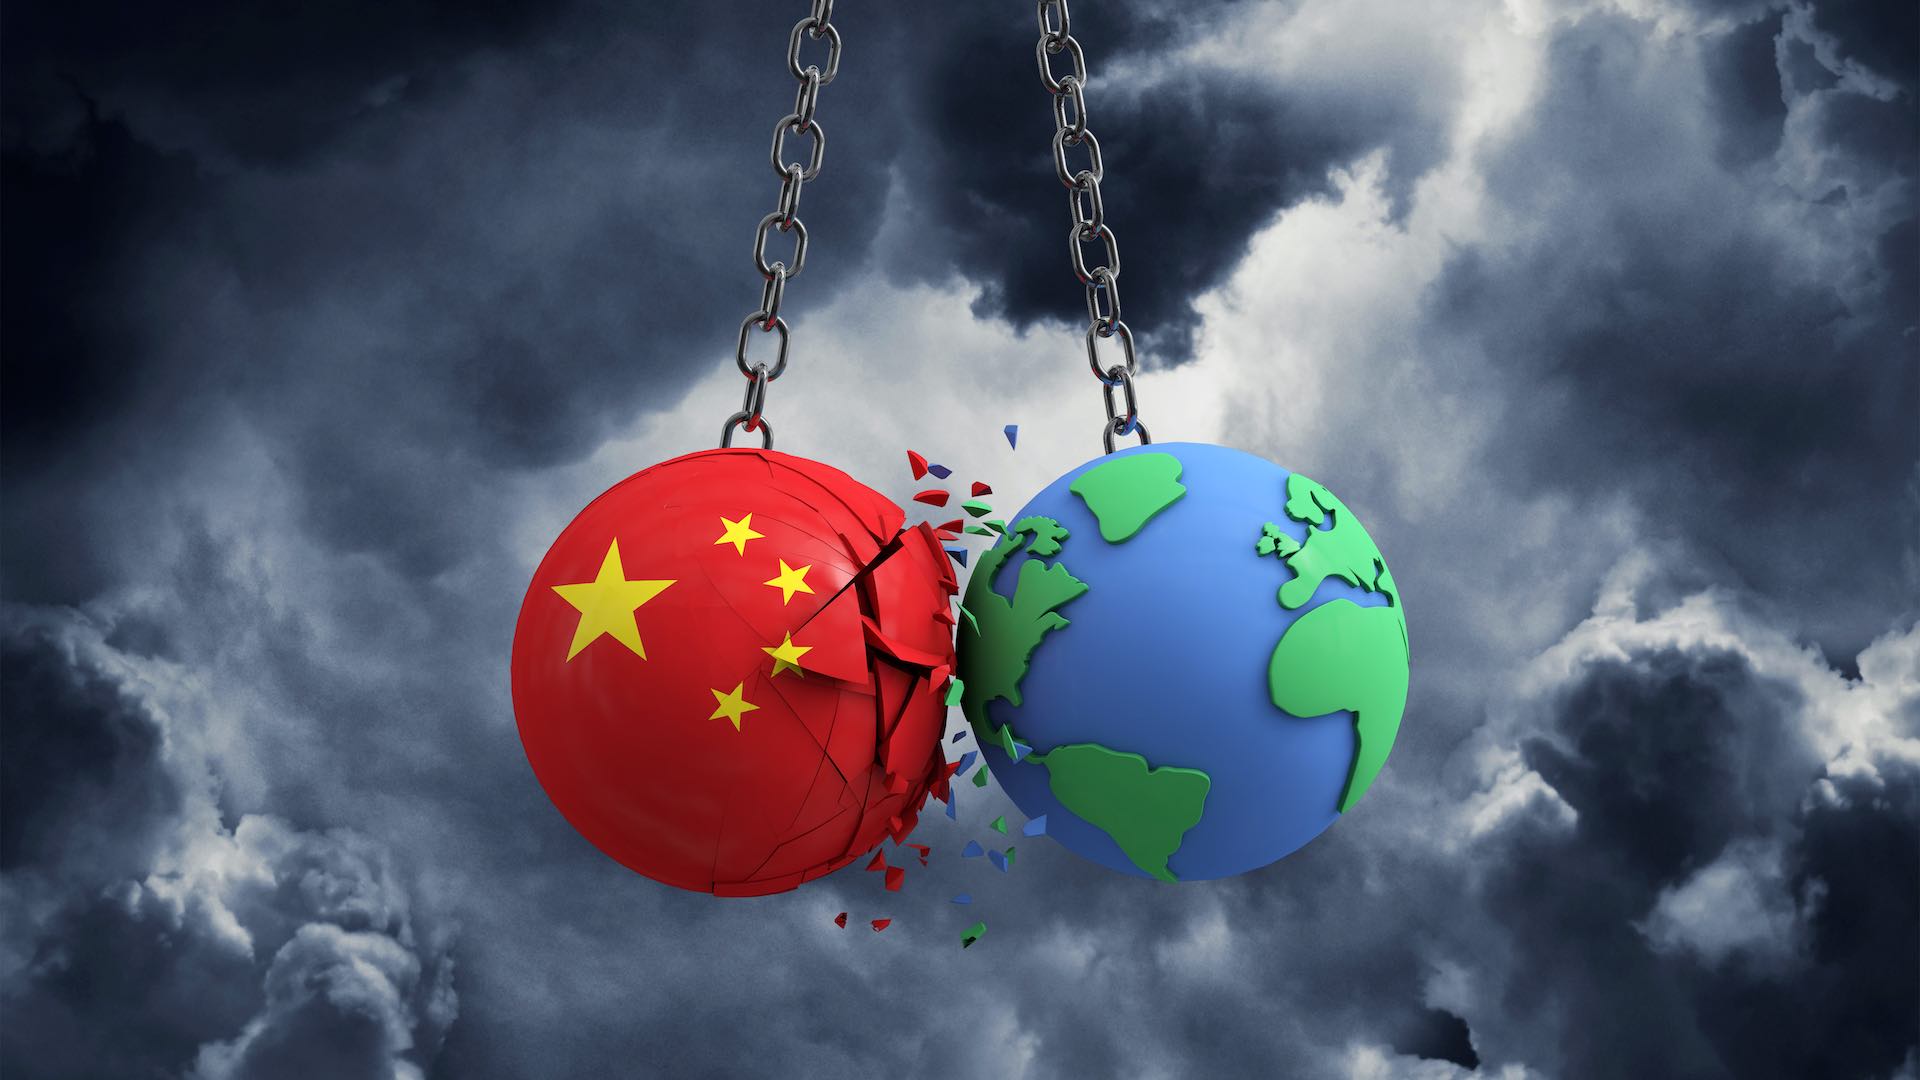 فشارهای ژئوپلیتیکی تلاش چین برای خودکفایی را مختل می کند